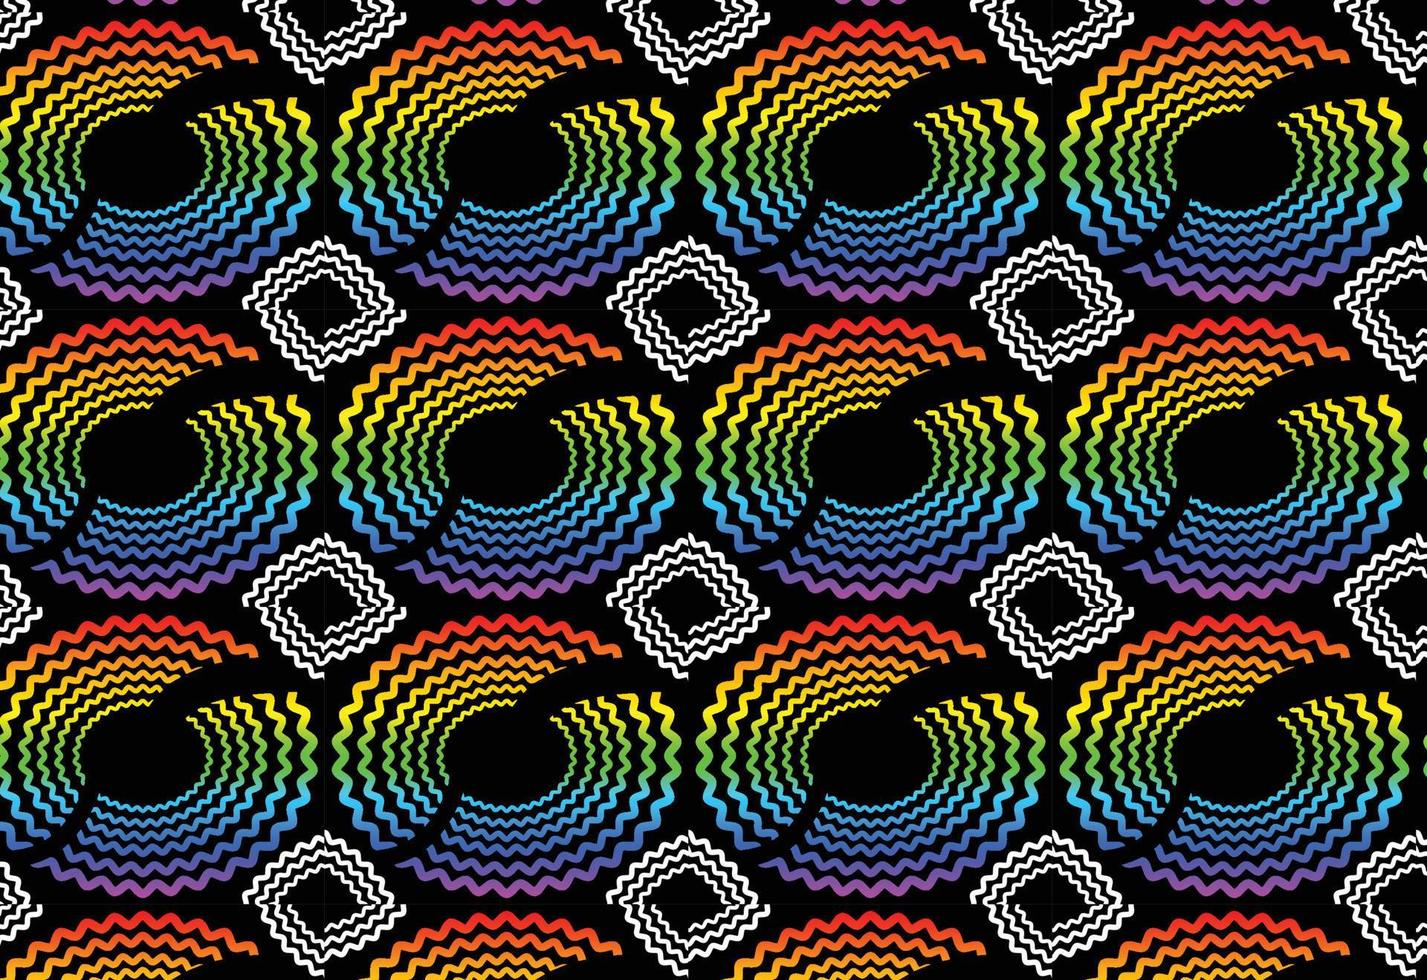 arco iris degradado geométrico nuevo patrón de fondo vector